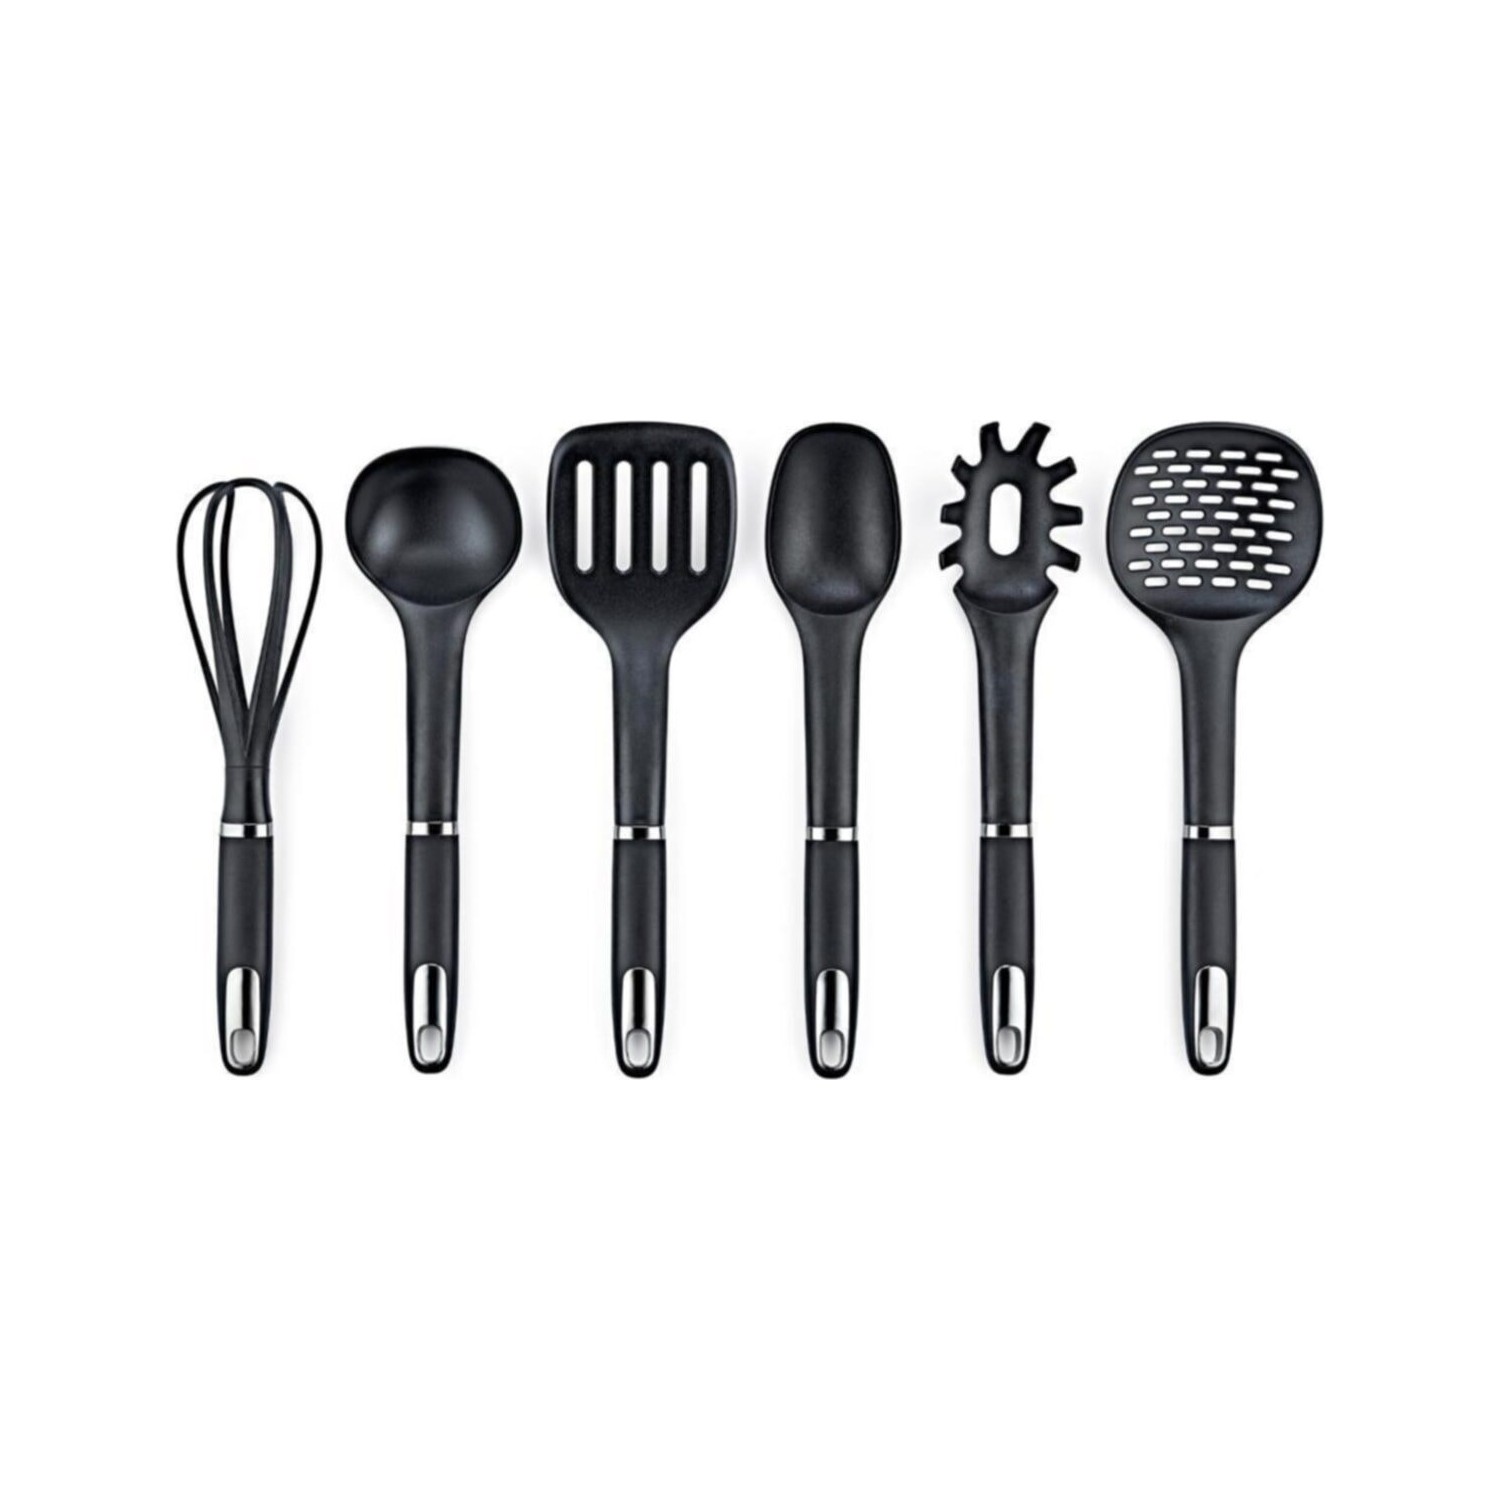 Набор кухонных принадлежностей Vipahmet из 6 предметов, черный набор выдавливателей для зубной пасты